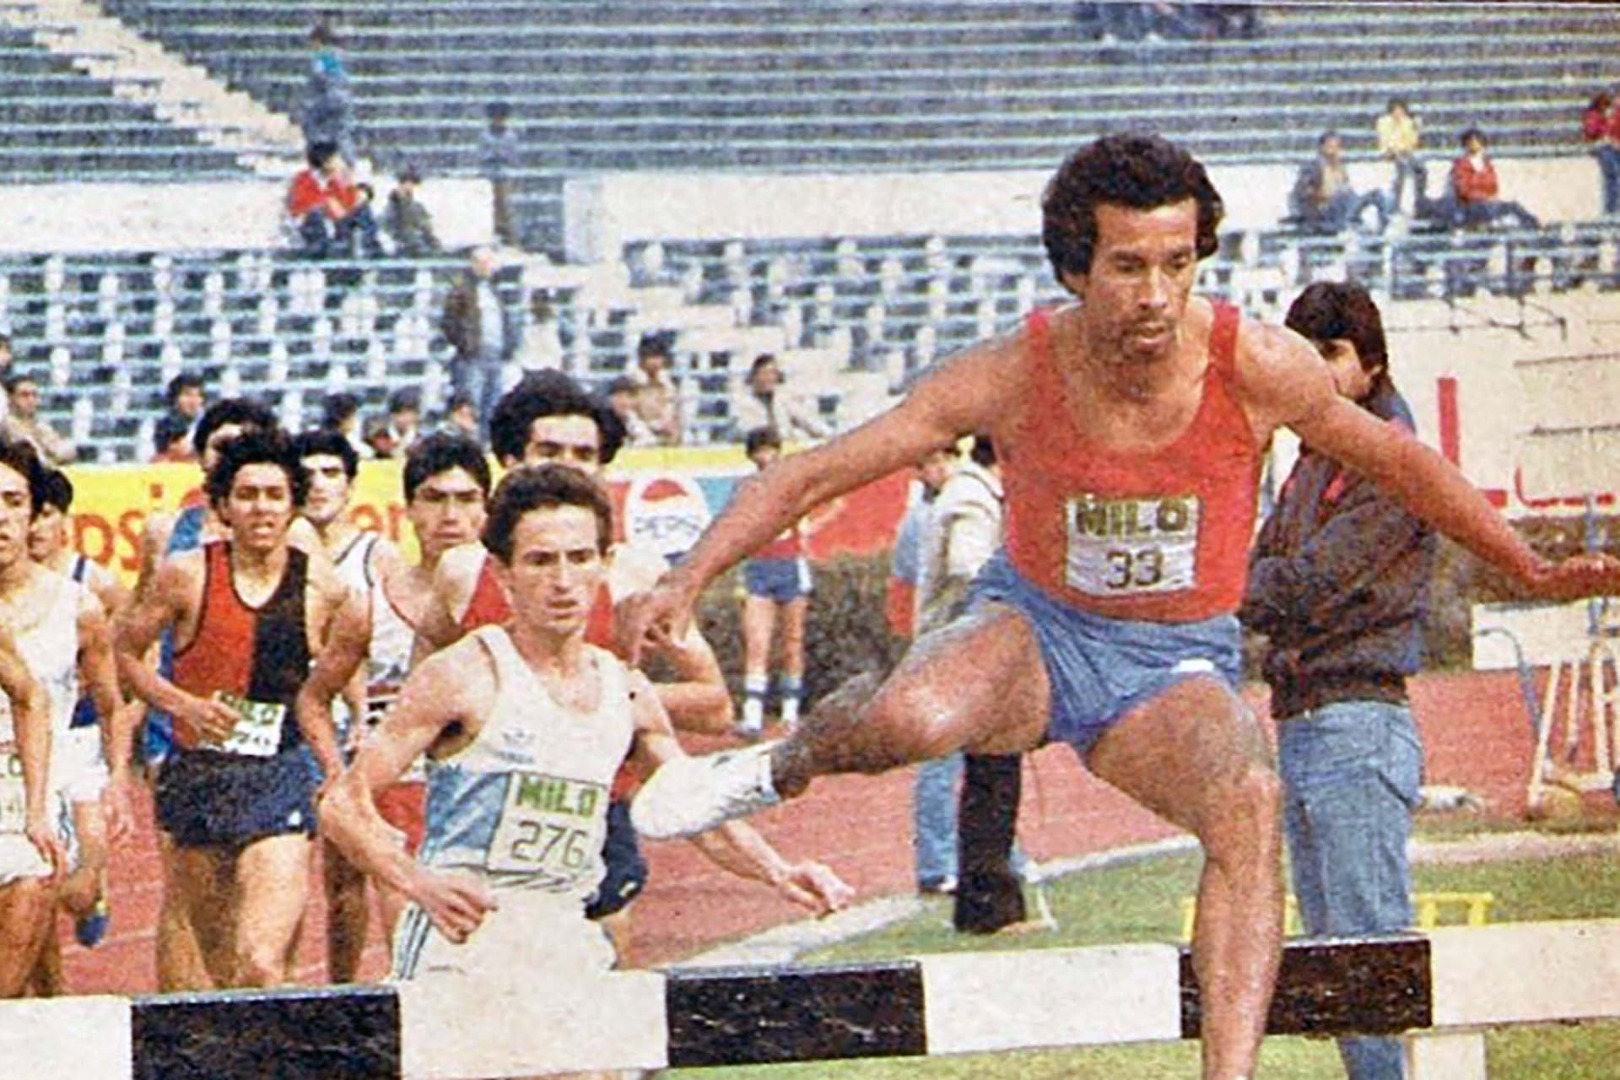 Chile Dorado: Emilio Ulloa, el único oro en Caracas 1983 rememora su hazaña